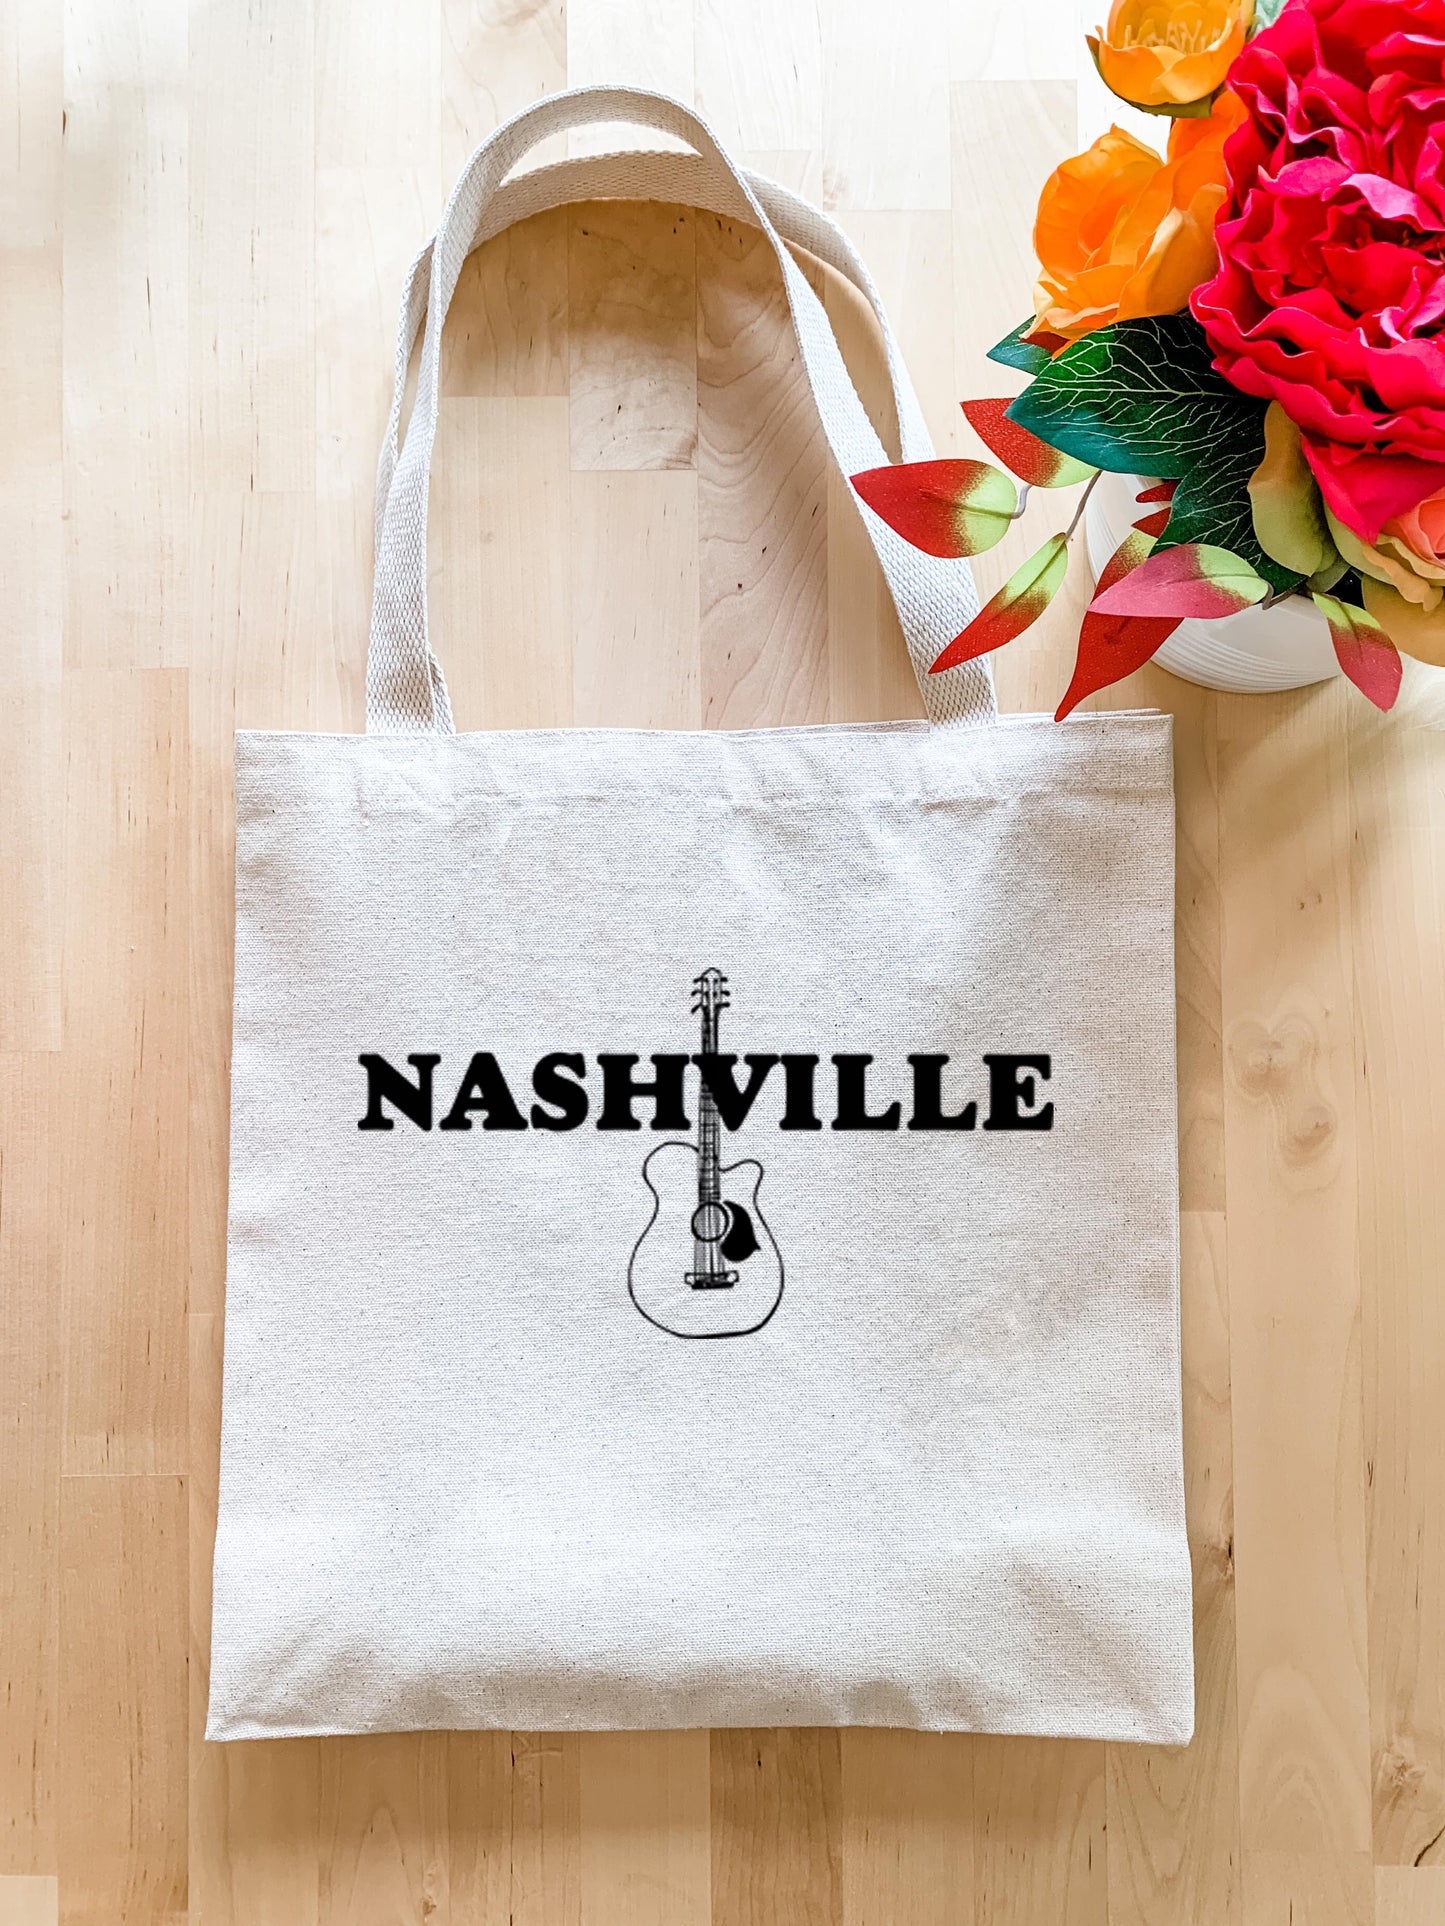 Nashville (TN) - Tote Bag - MoonlightMakers